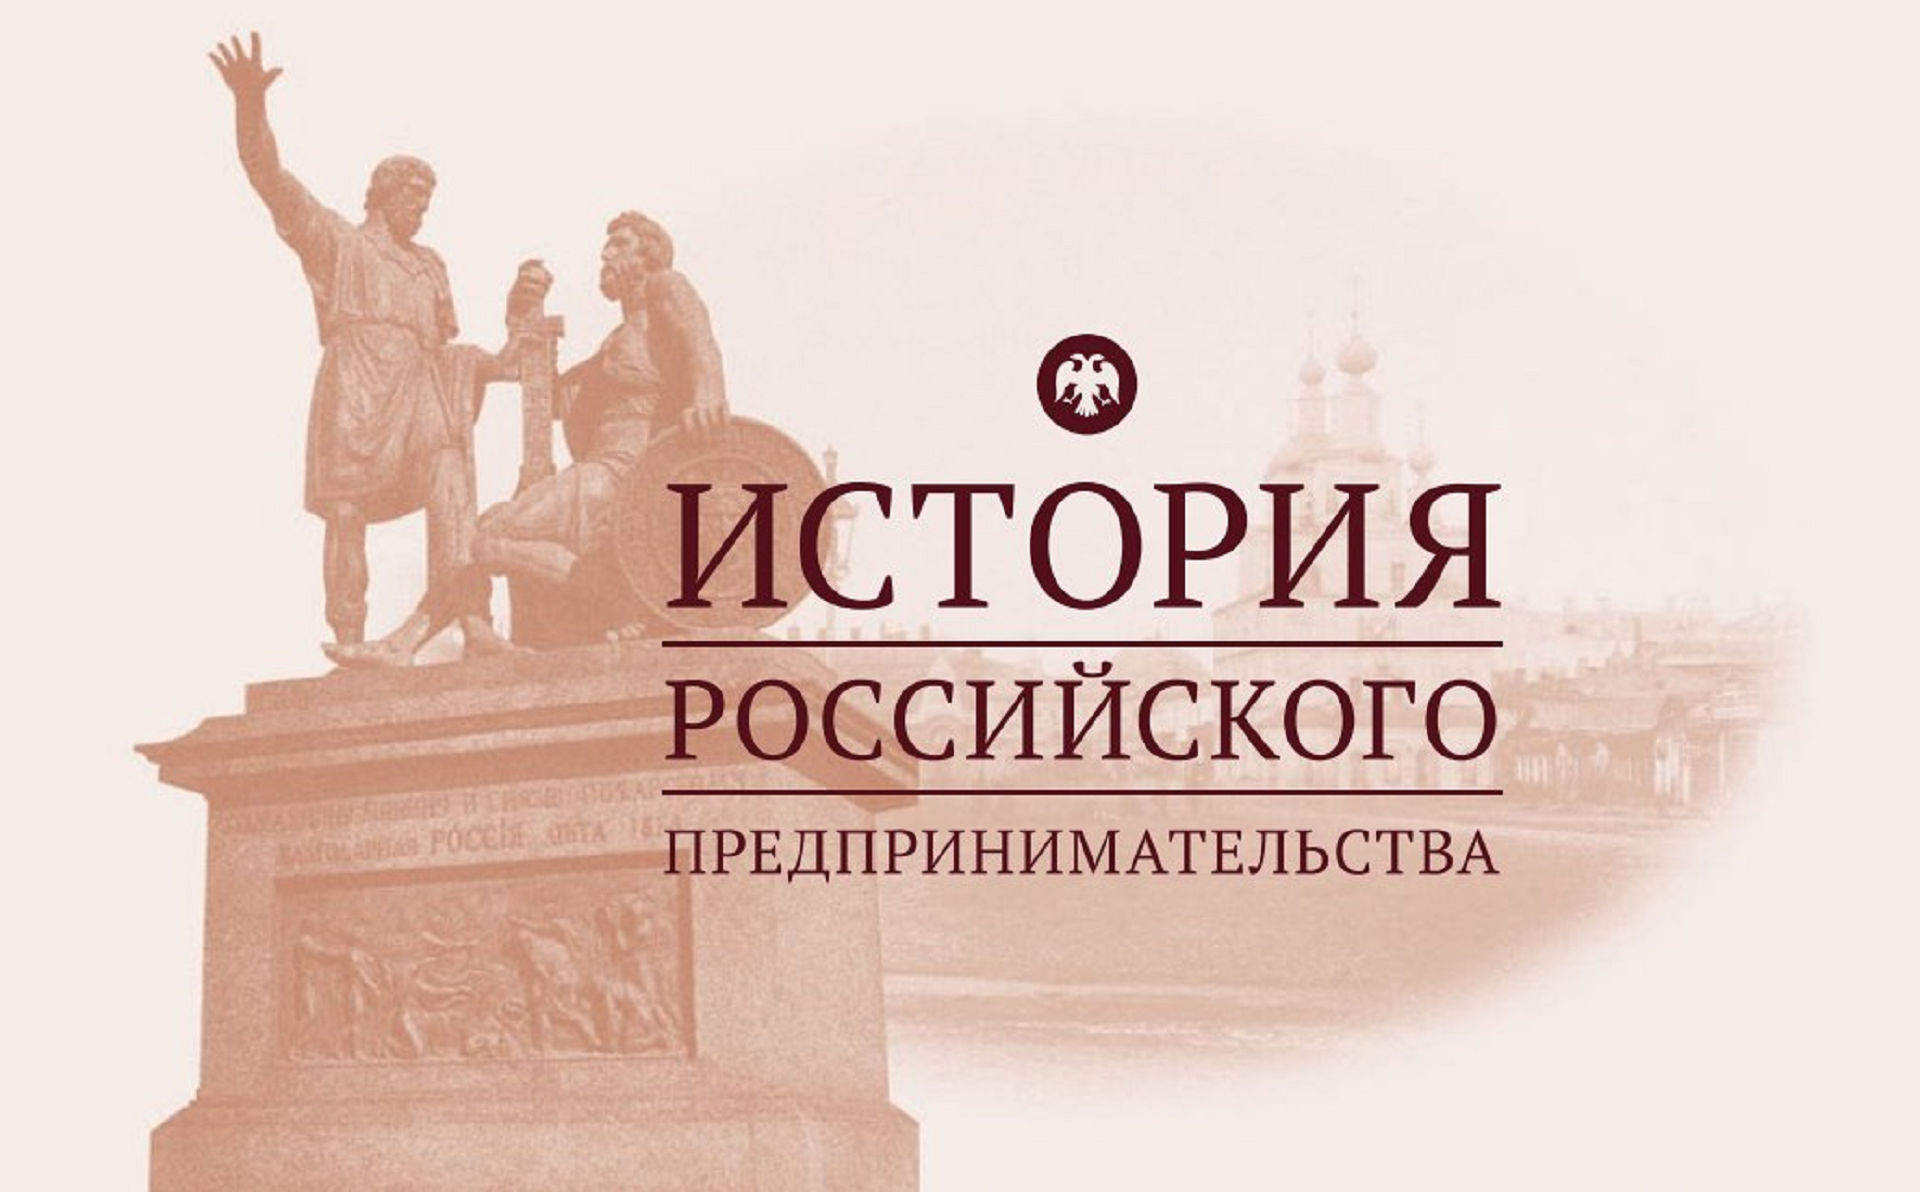 ВятГУ приглашает принять участие в олимпиаде «История российского предпринимательства»